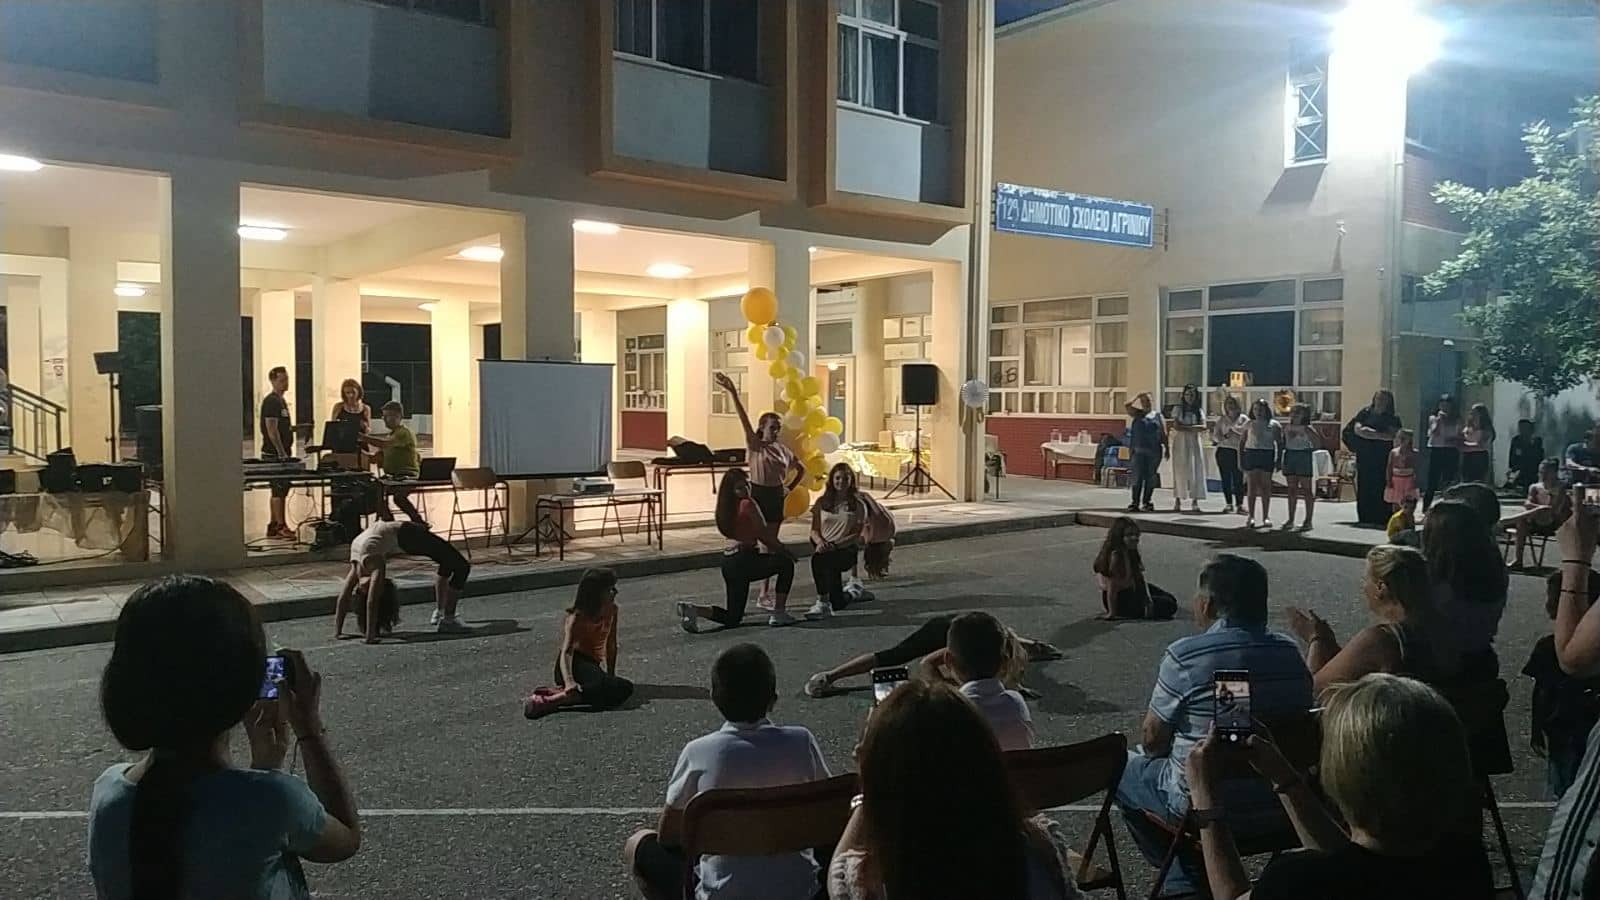 12ο Δημοτικό Σχολείο Αγρινίου: Το διασκέδασαν στην τελετή λήξης της χρονιάς